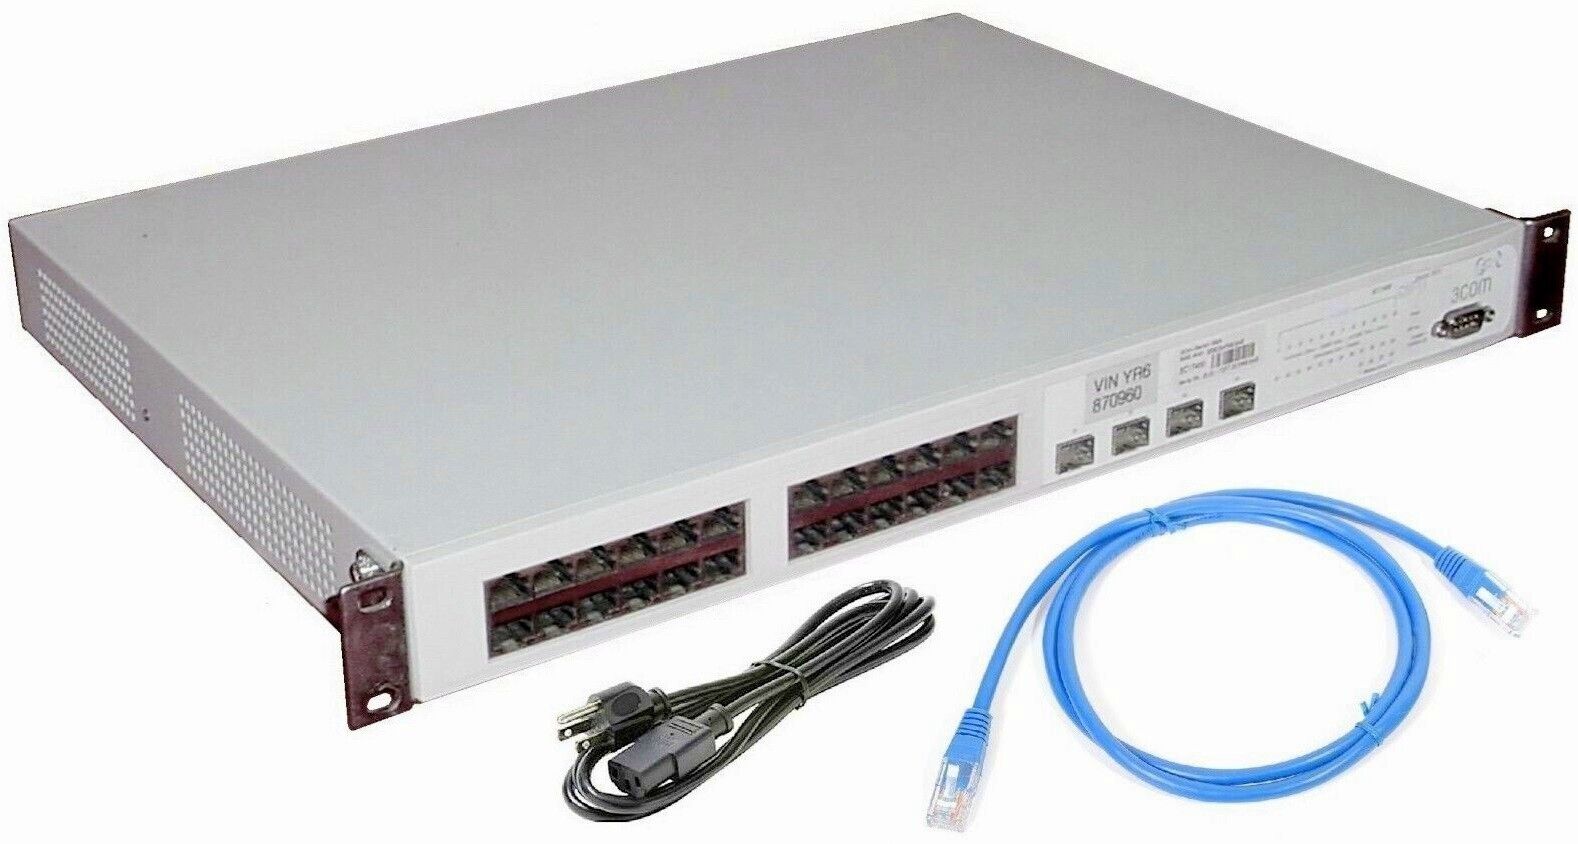 3Com 3C17400 3824 24 Port Superstack 3 Gigabit Managed 10/100/1000 Lan Switch